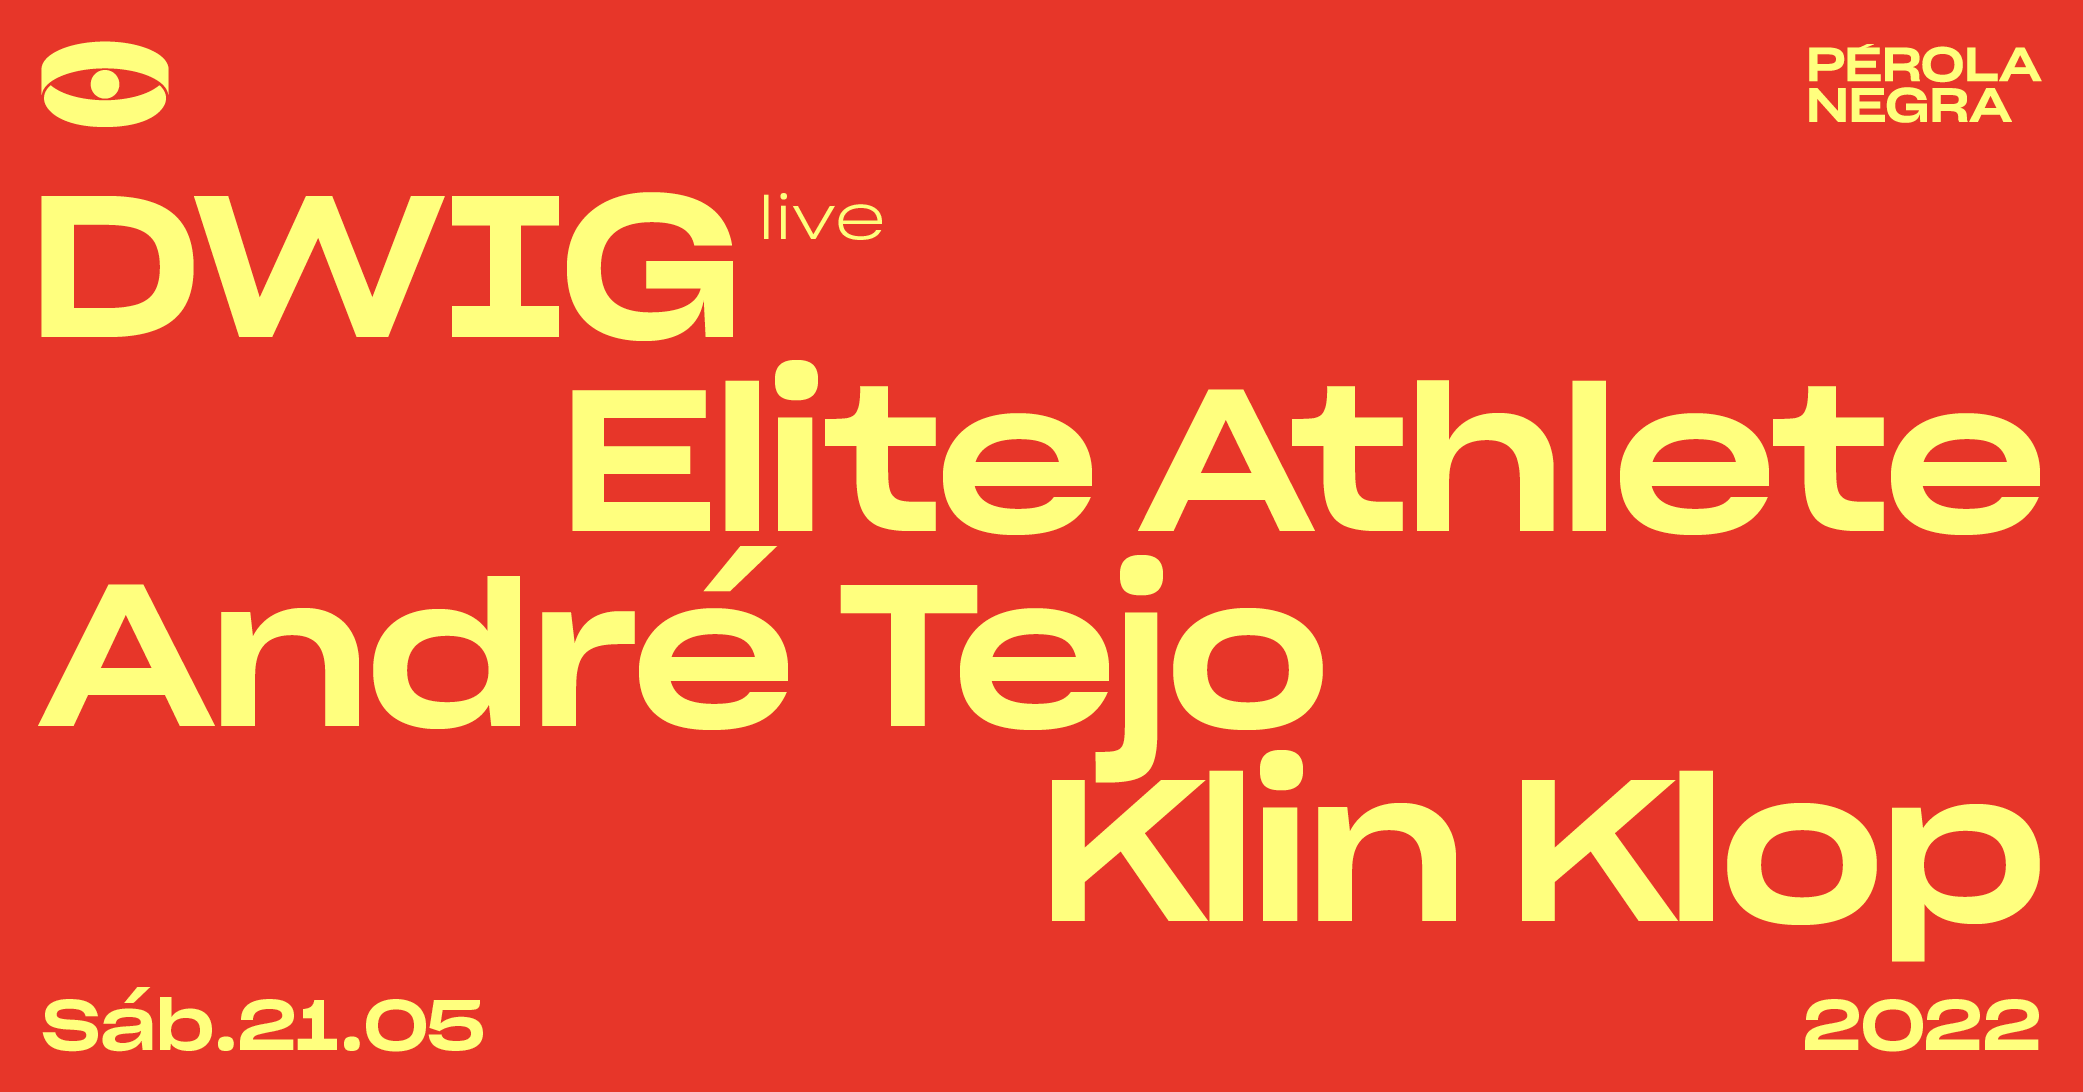 Dwig (live), Elite Athlete b2b André Tejo, Klin Klop - Página frontal